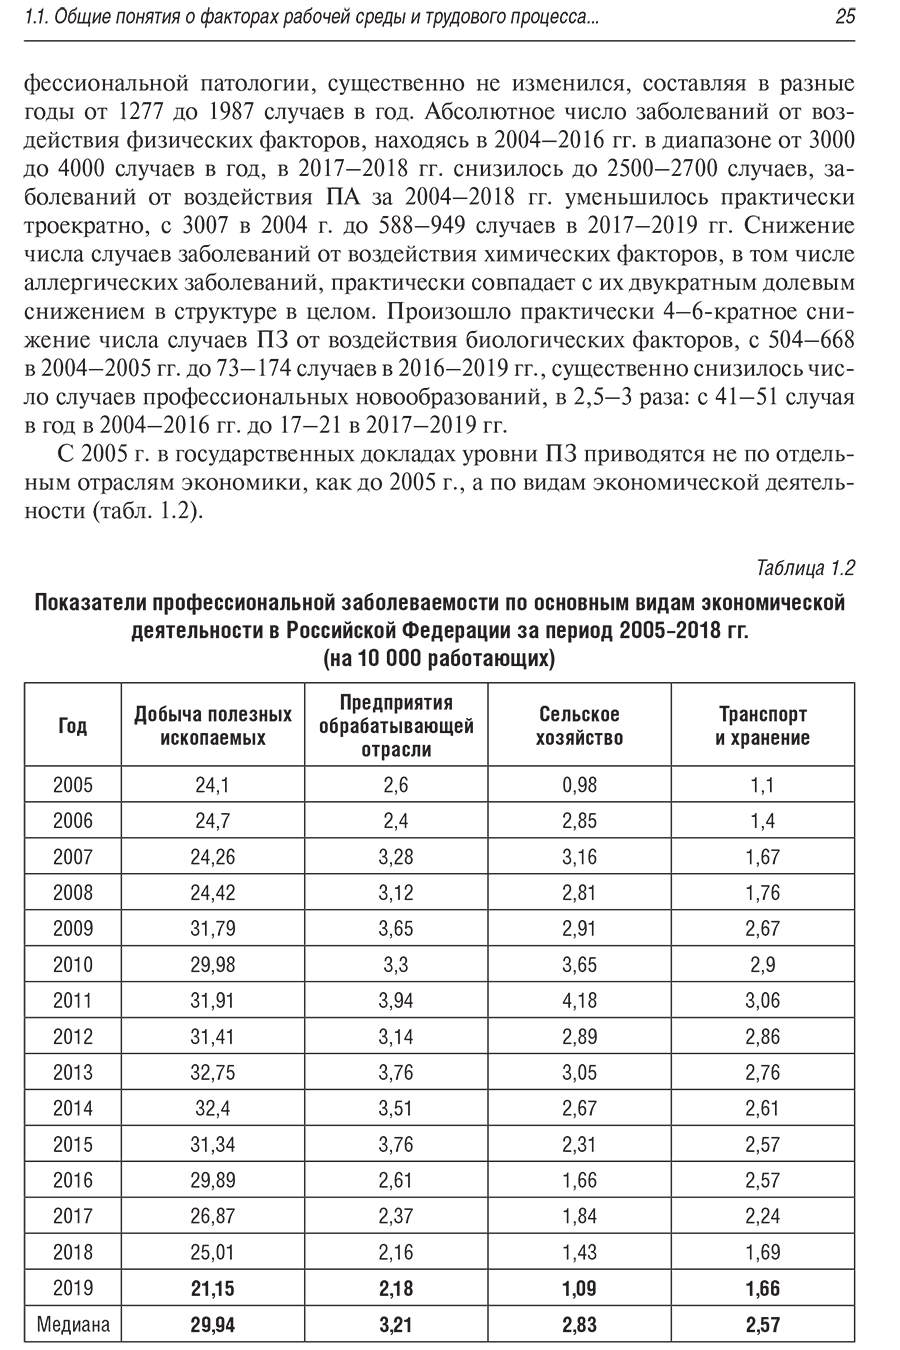 Показатели профессиональной заболеваемости по основным видам экономической деятельности в Российской Федерации за период 2005-2018 гг. (на 10 000 работающих)